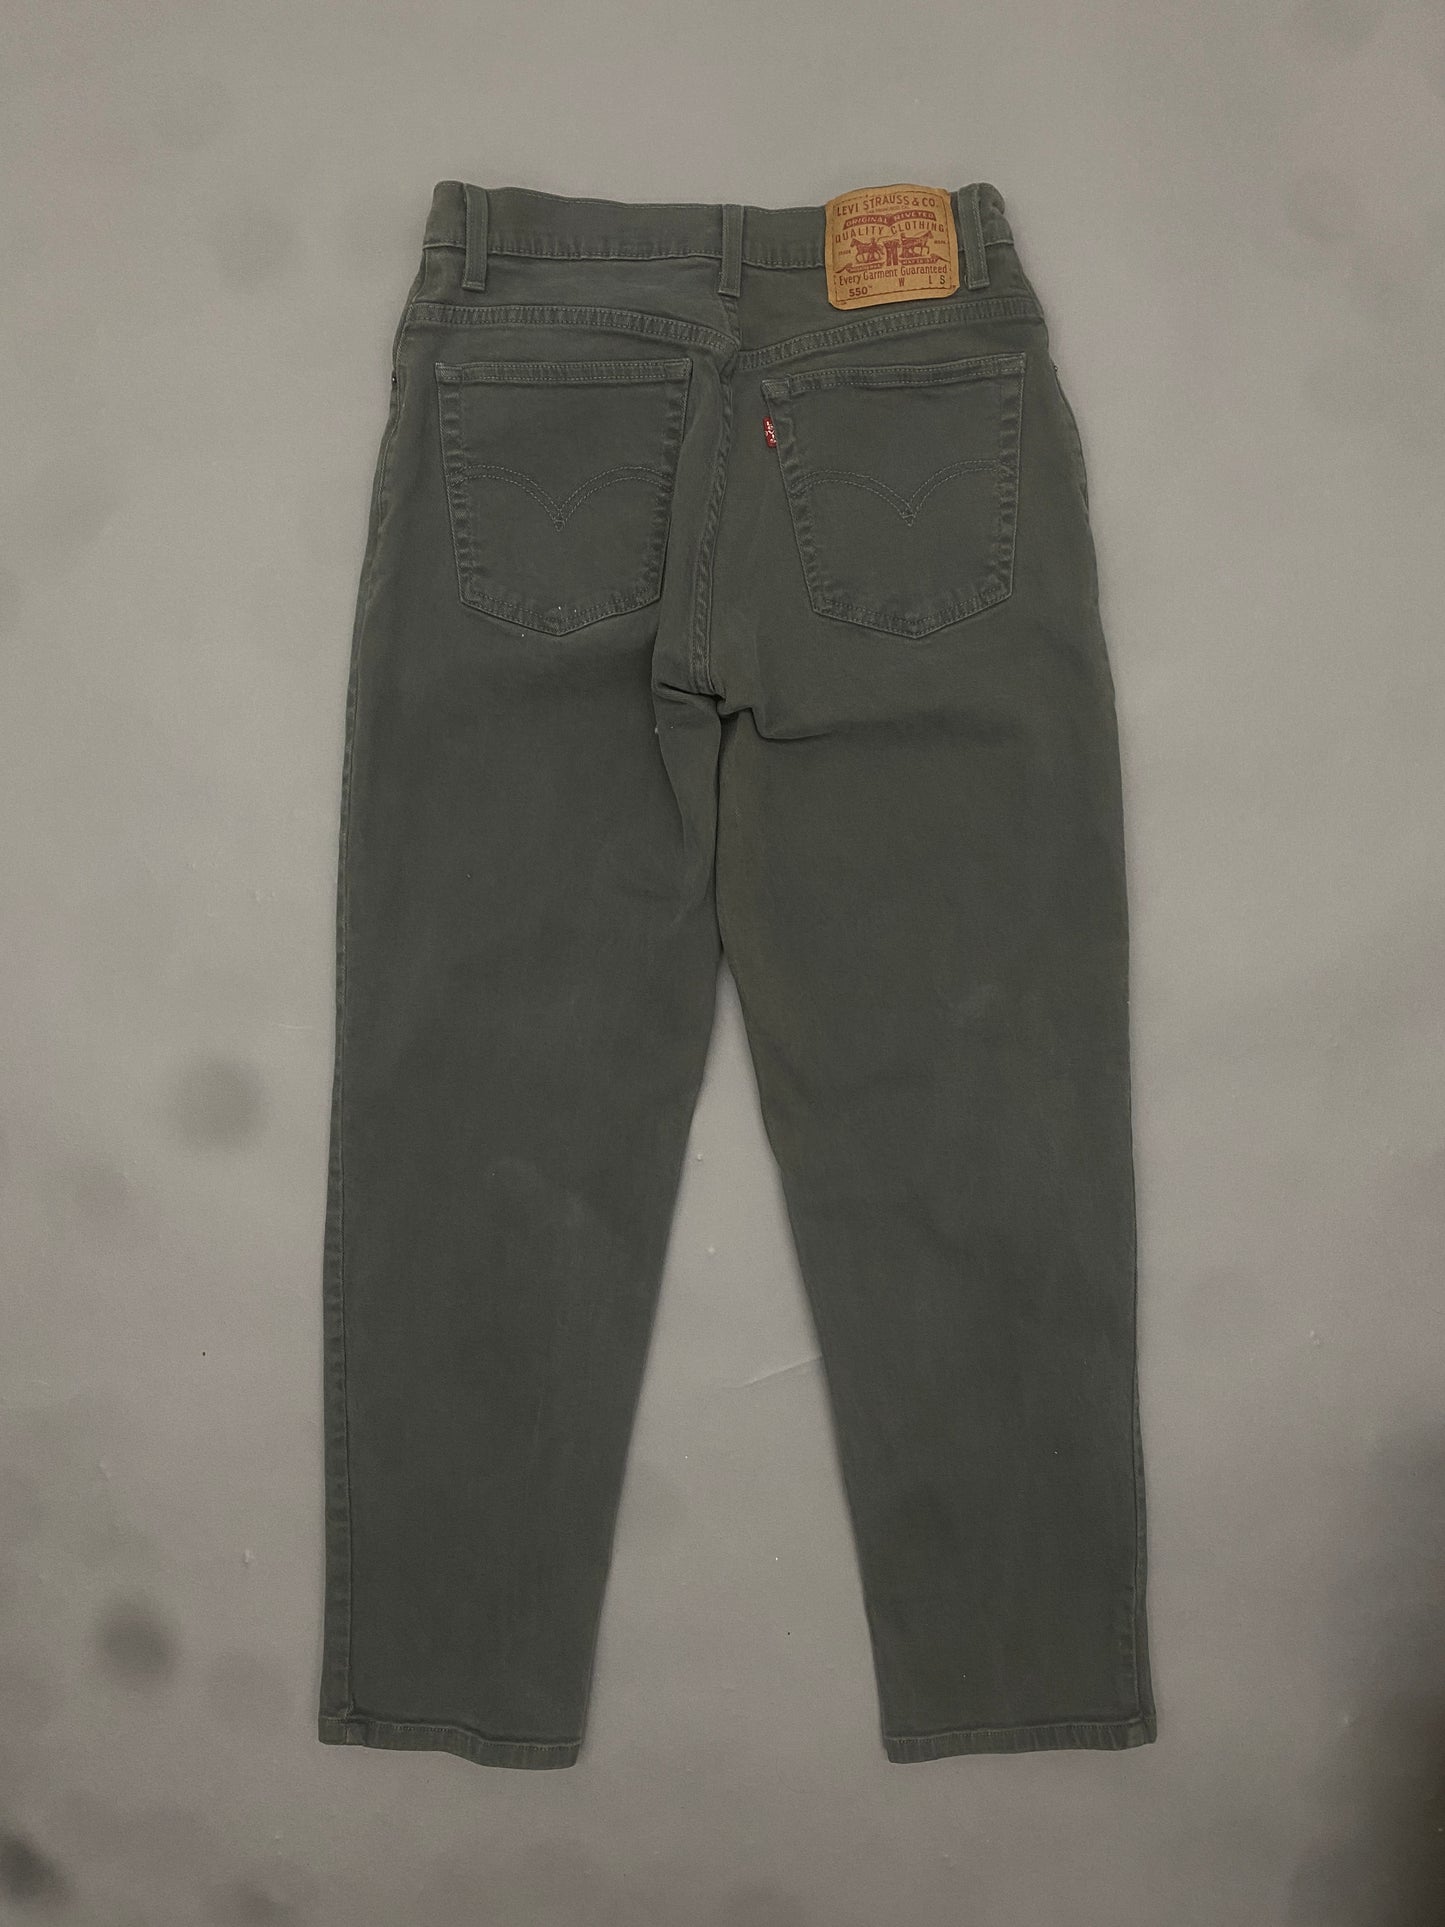 Levis 550 Vintage Jeans - Women's Small